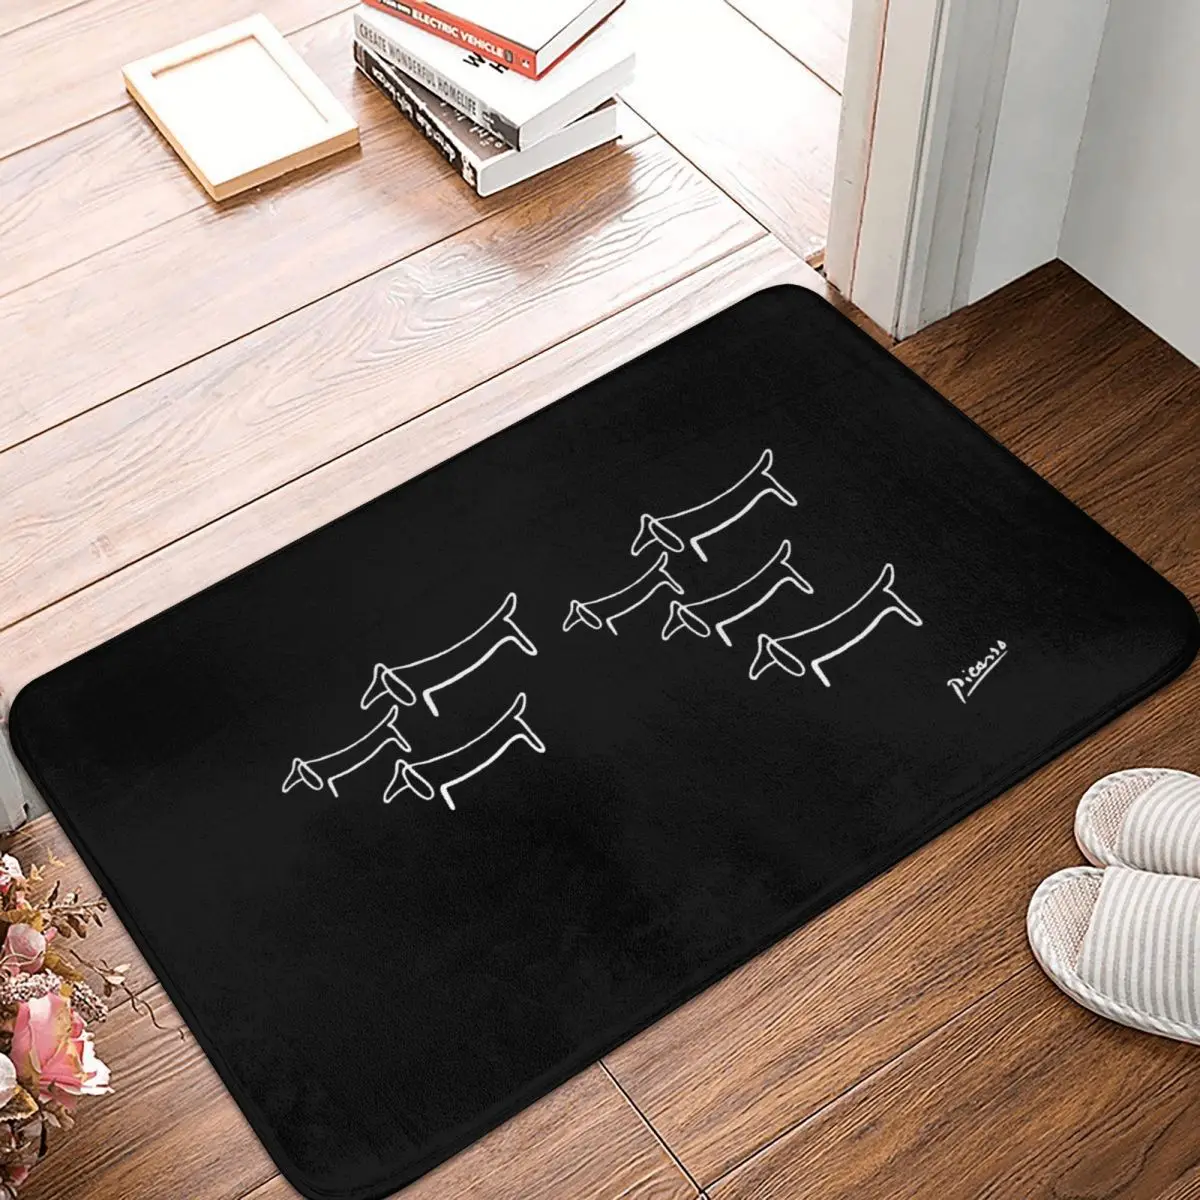 

Pablo Picasso Cubist Painter Non-slip Doormat Line Wild Wiener Dog Dachshund Bath Kitchen Mat Welcome Carpet Home Modern Decor